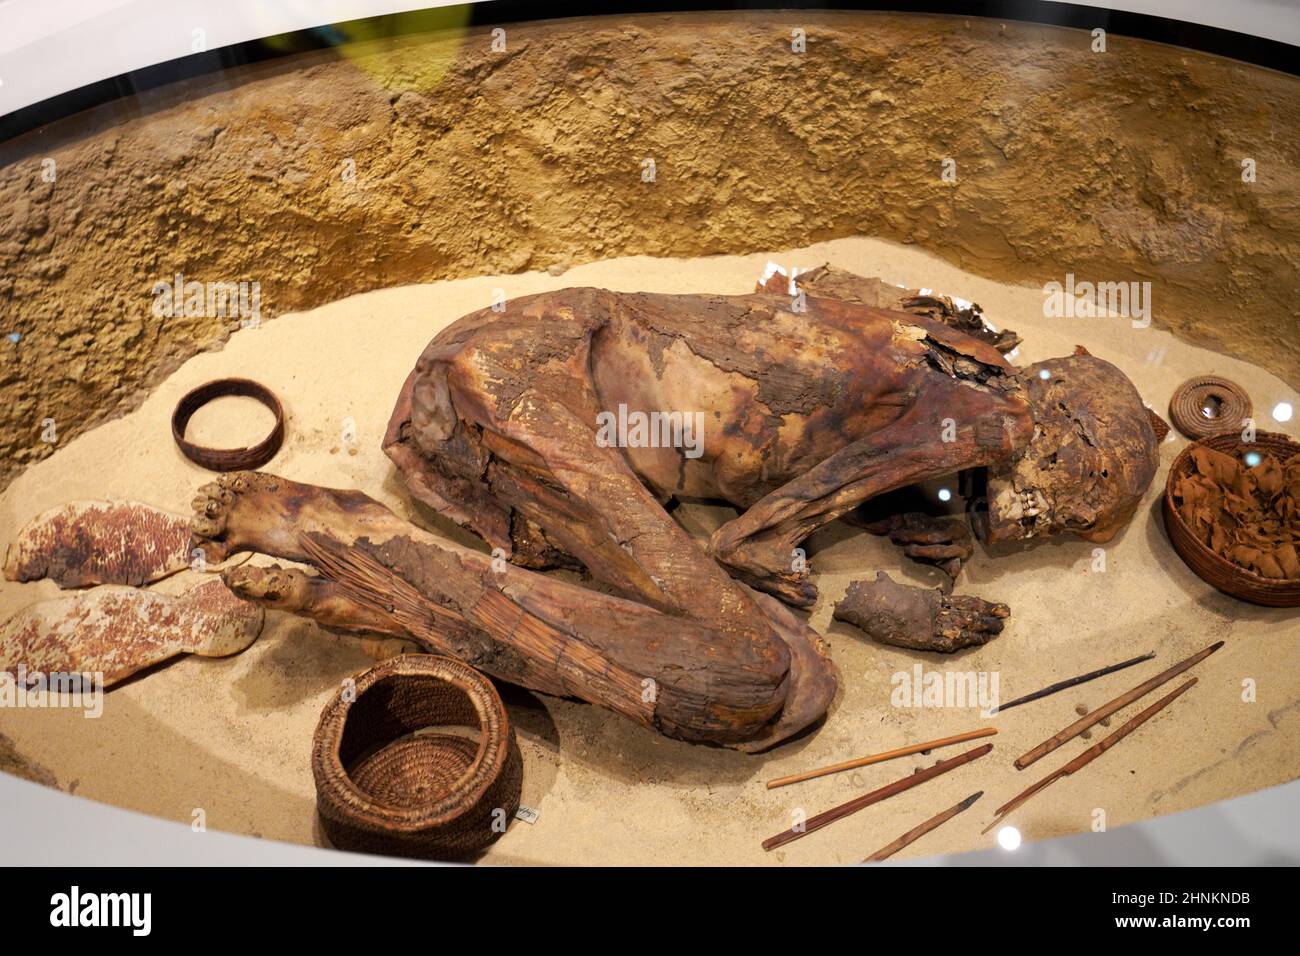 TURIN, ITALIEN - 19. AUGUST 2021: Mumie in fetaler Position. Mumifizierung eines Körpers während der ägyptischen Zivilisation, Ägyptisches Museum von Turin, Italien Stockfoto